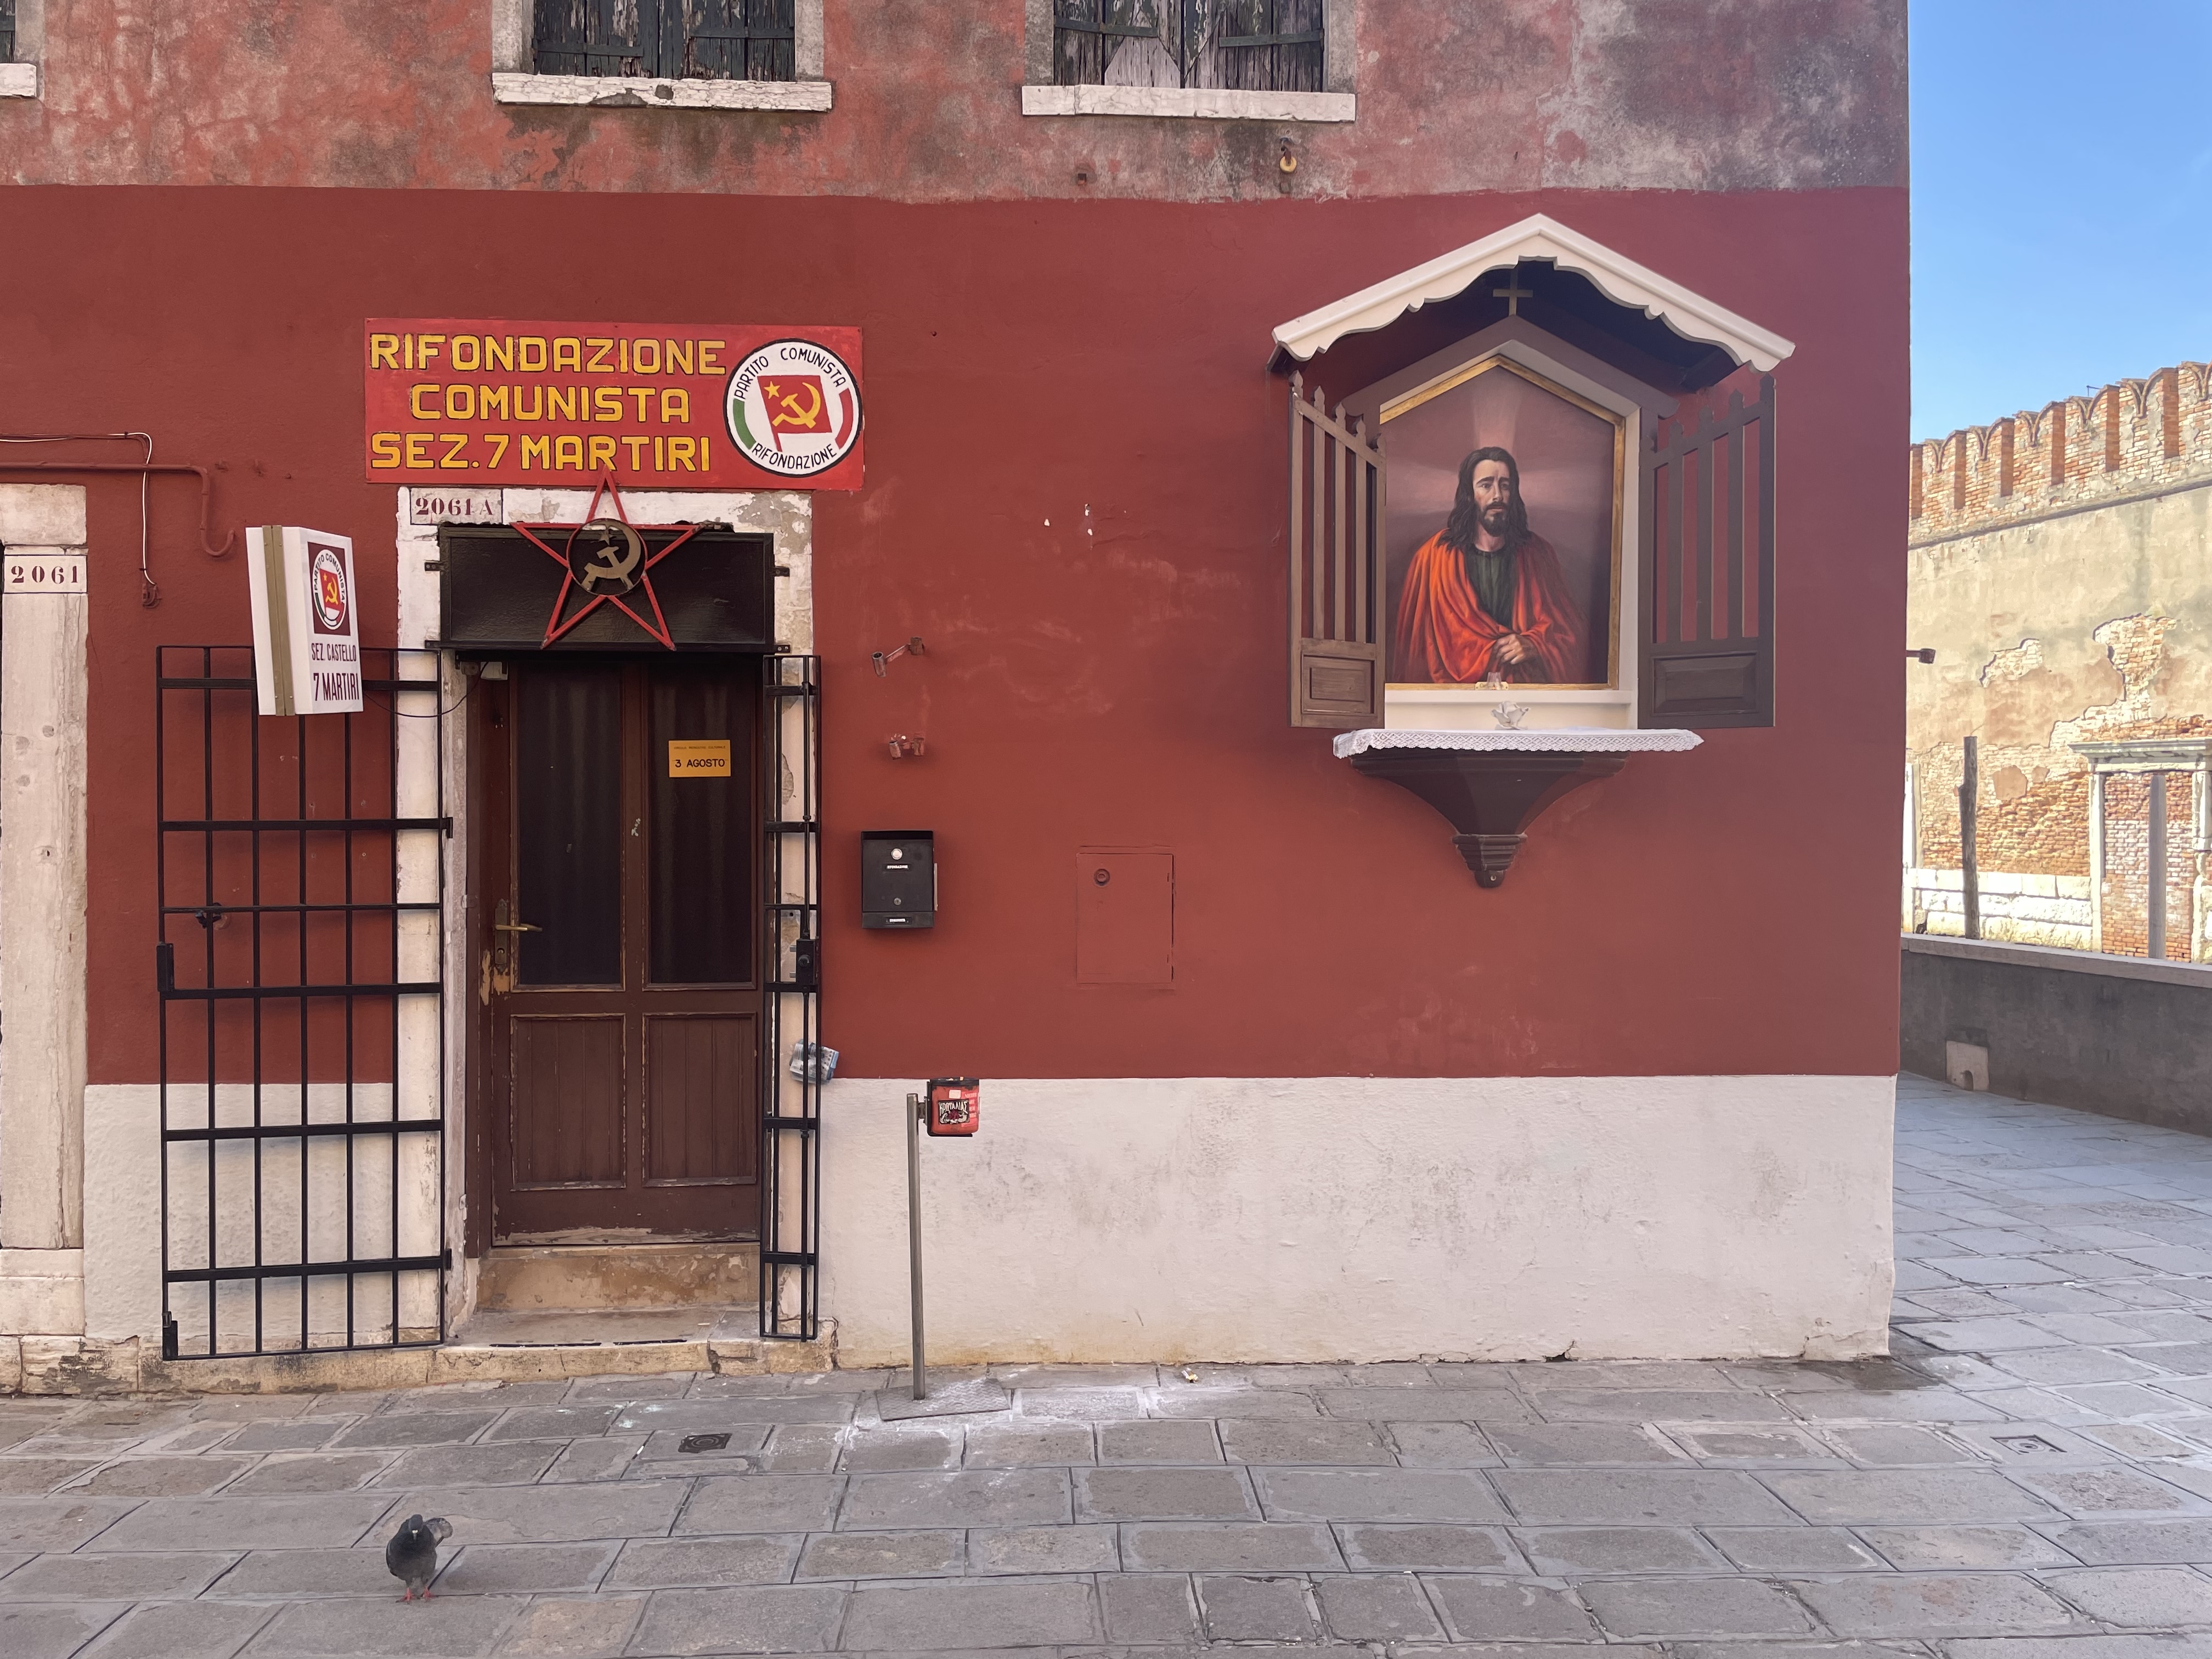 Heiligenbild neben dem Büro der kommunistischen Partei in Venedig